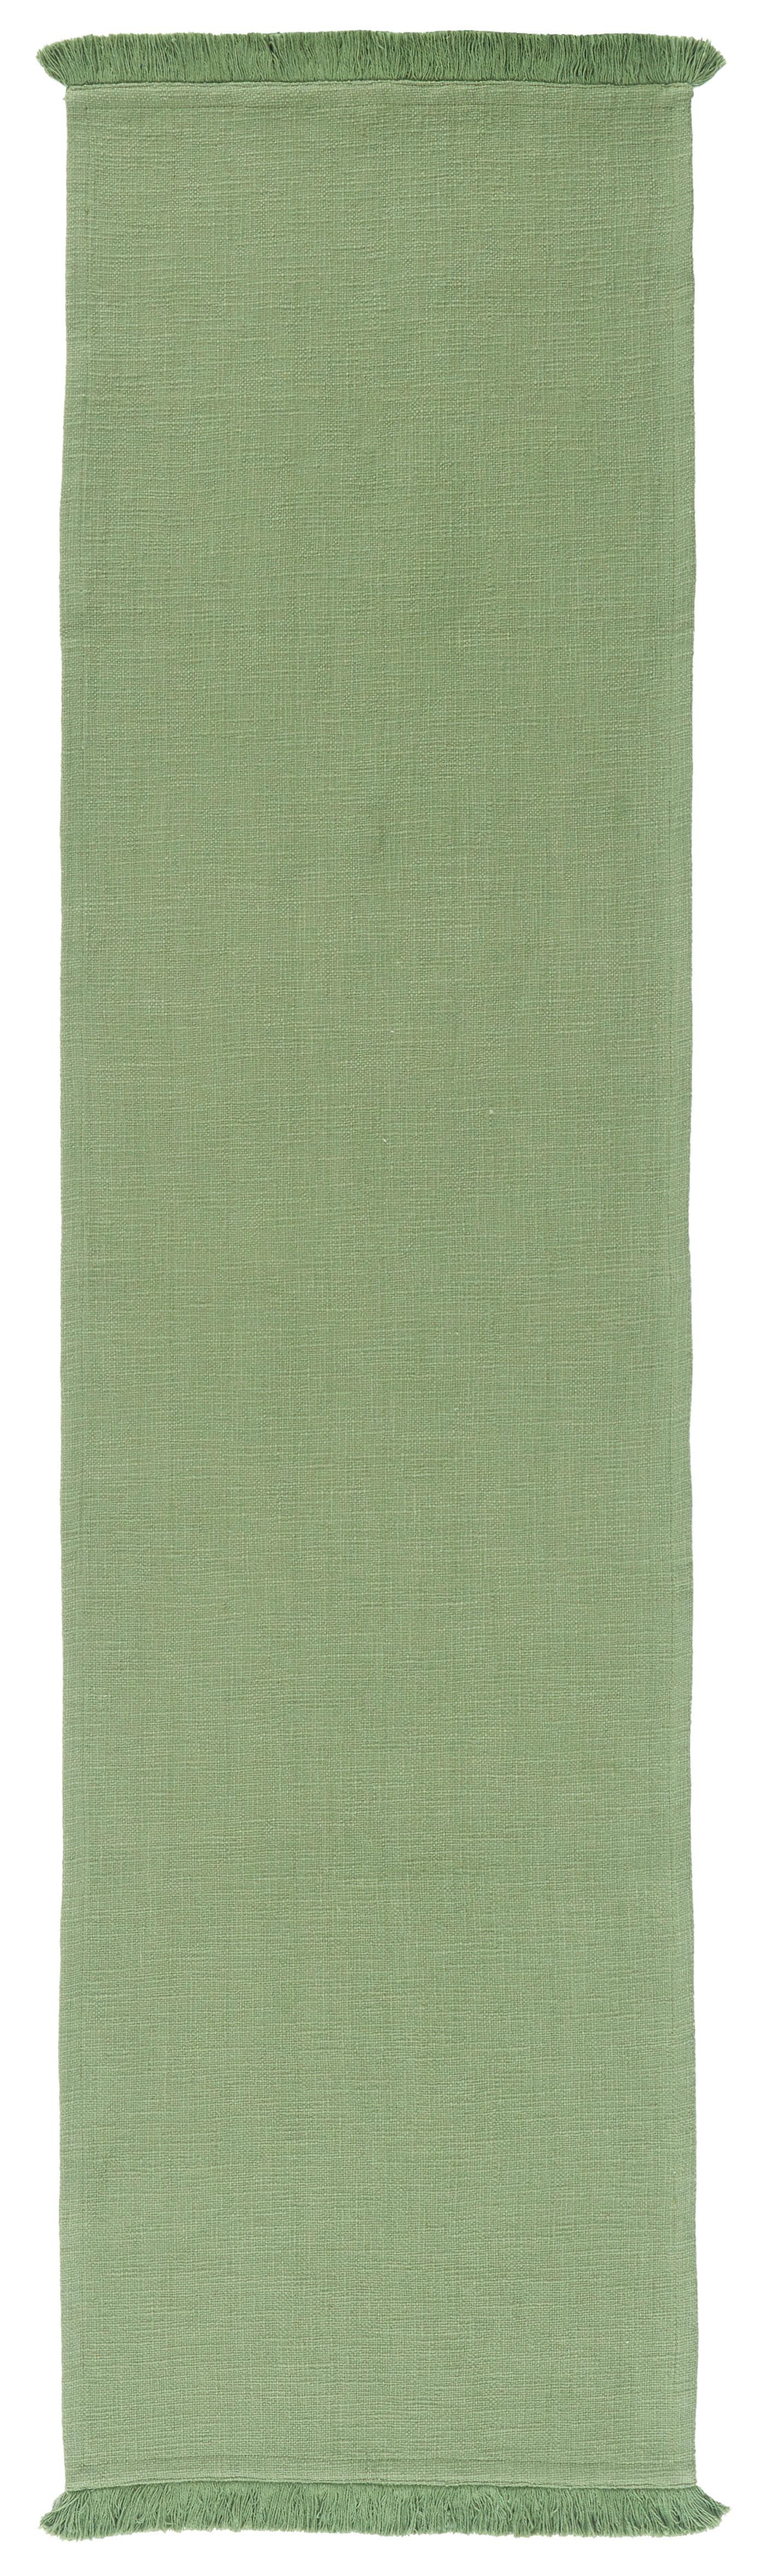 Běhoun Na Stůl Pablo, 45/170cm, Zelená - zelená, Moderní, textil (45/170cm) - Premium Living